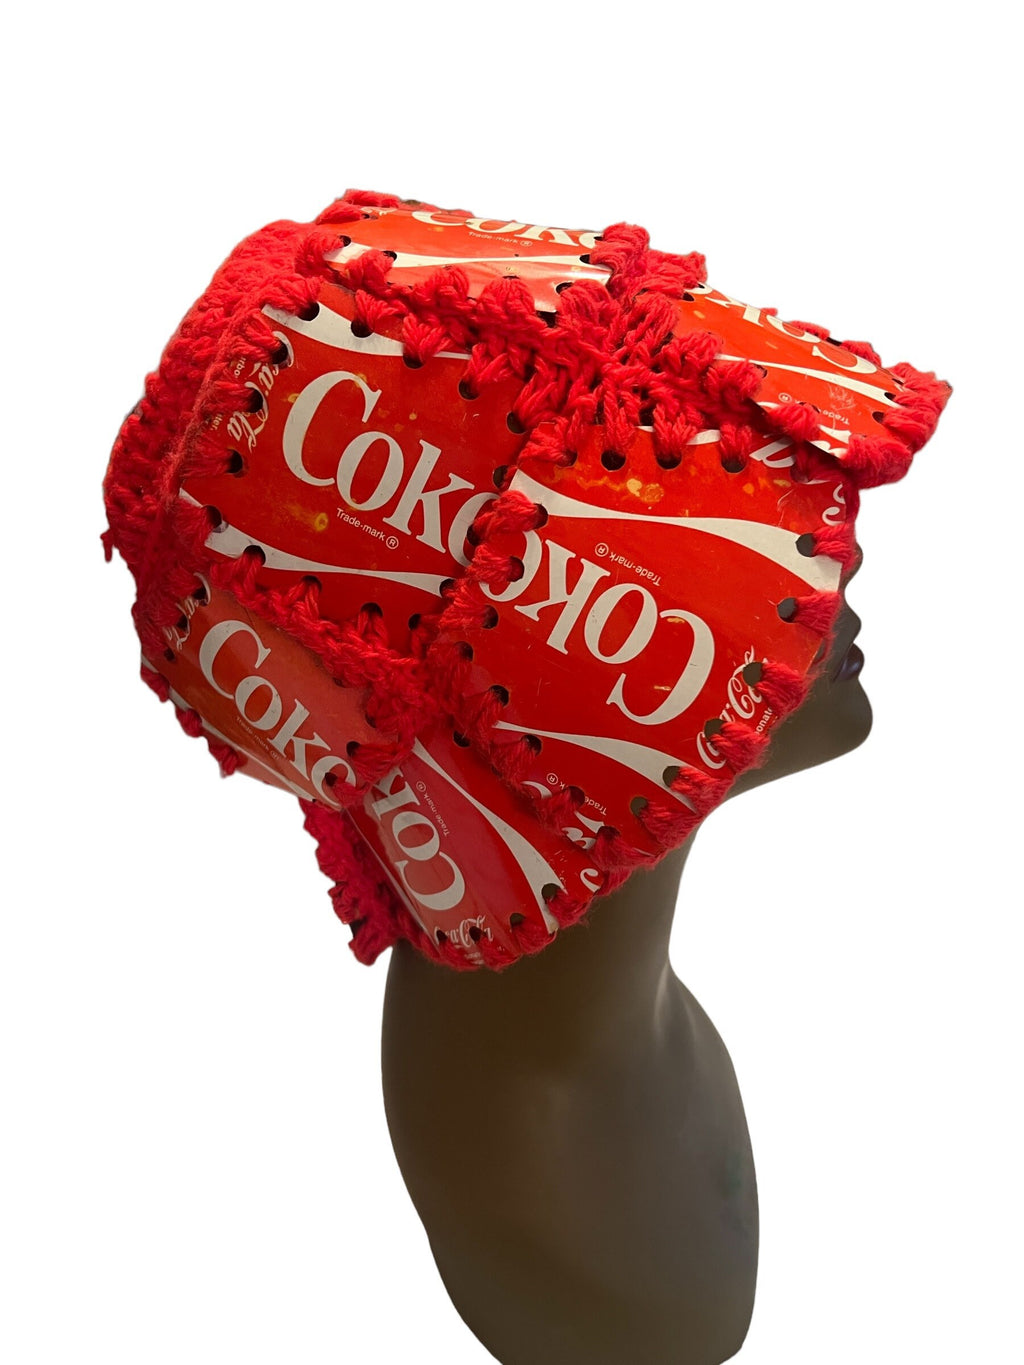 Vintage Coca-Cola can crochet bucket hat